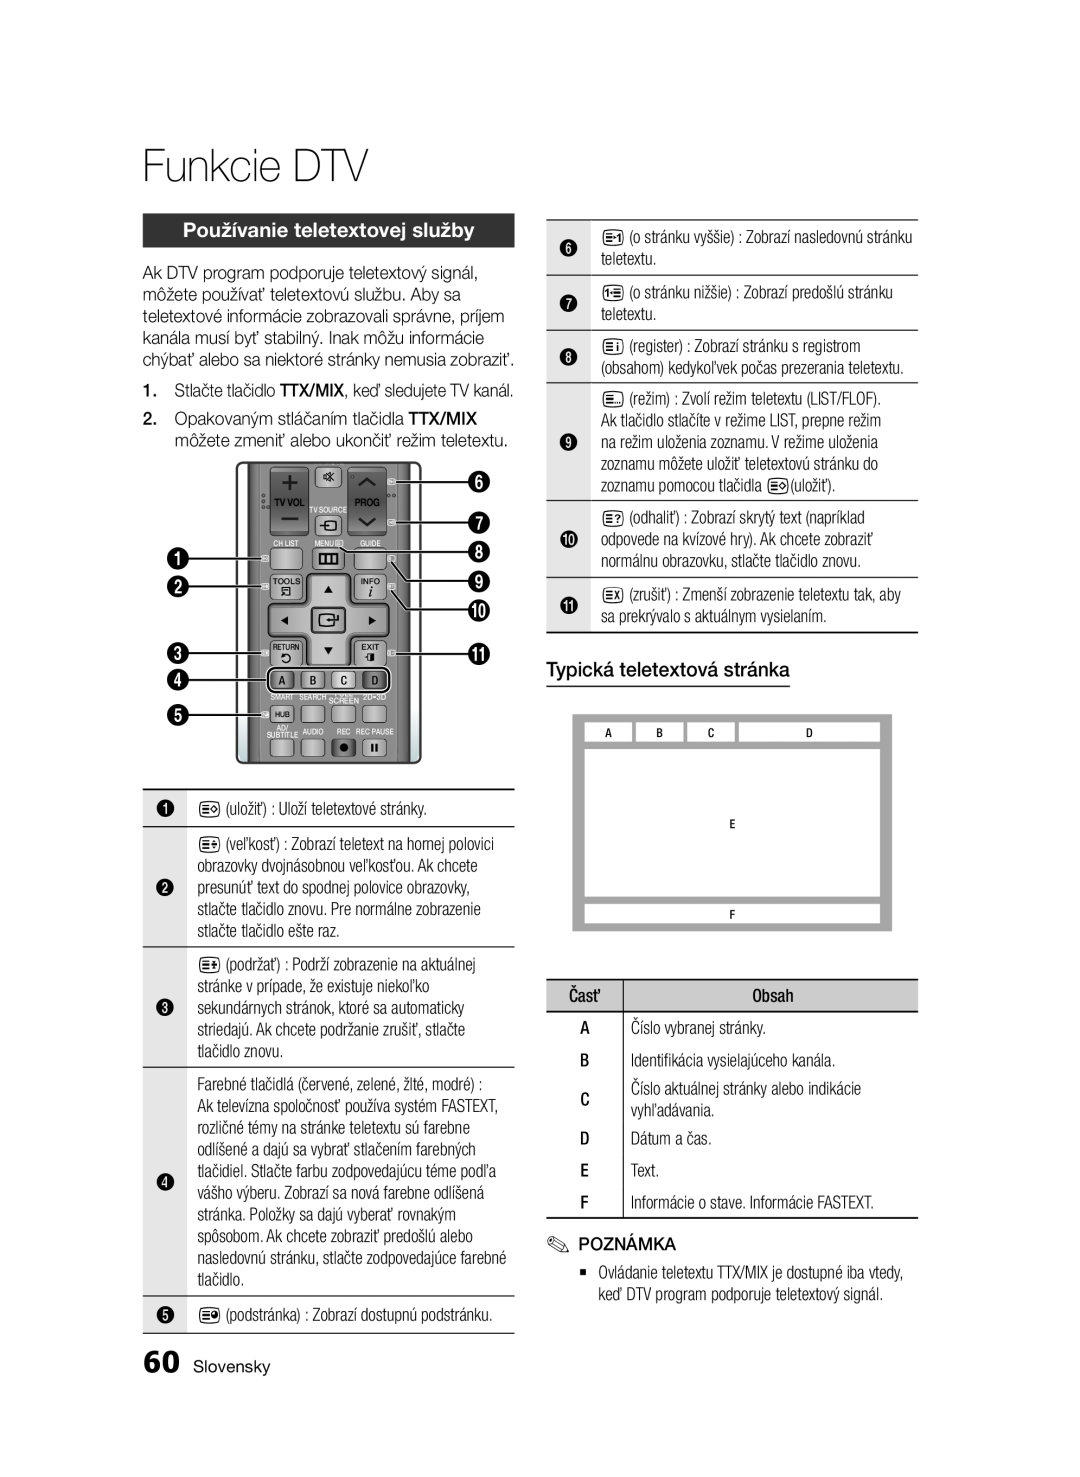 Samsung BD-E6300/EN manual Používanie teletextovej služby, Typická teletextová stránka, teletextu, Funkcie DTV, Slovensky 